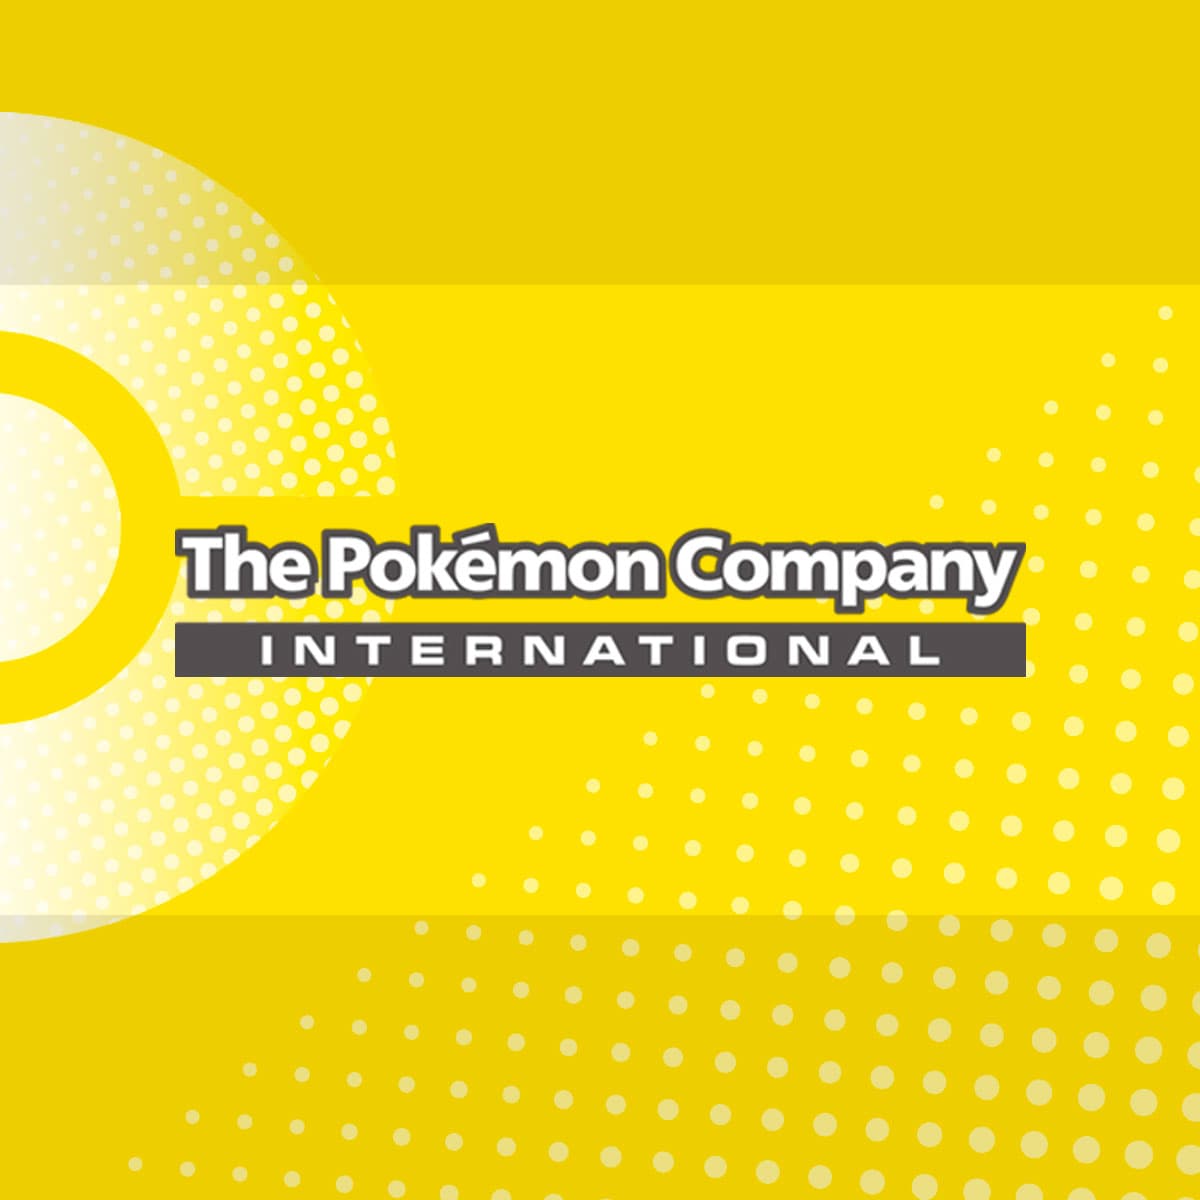 corporate.pokemon.com